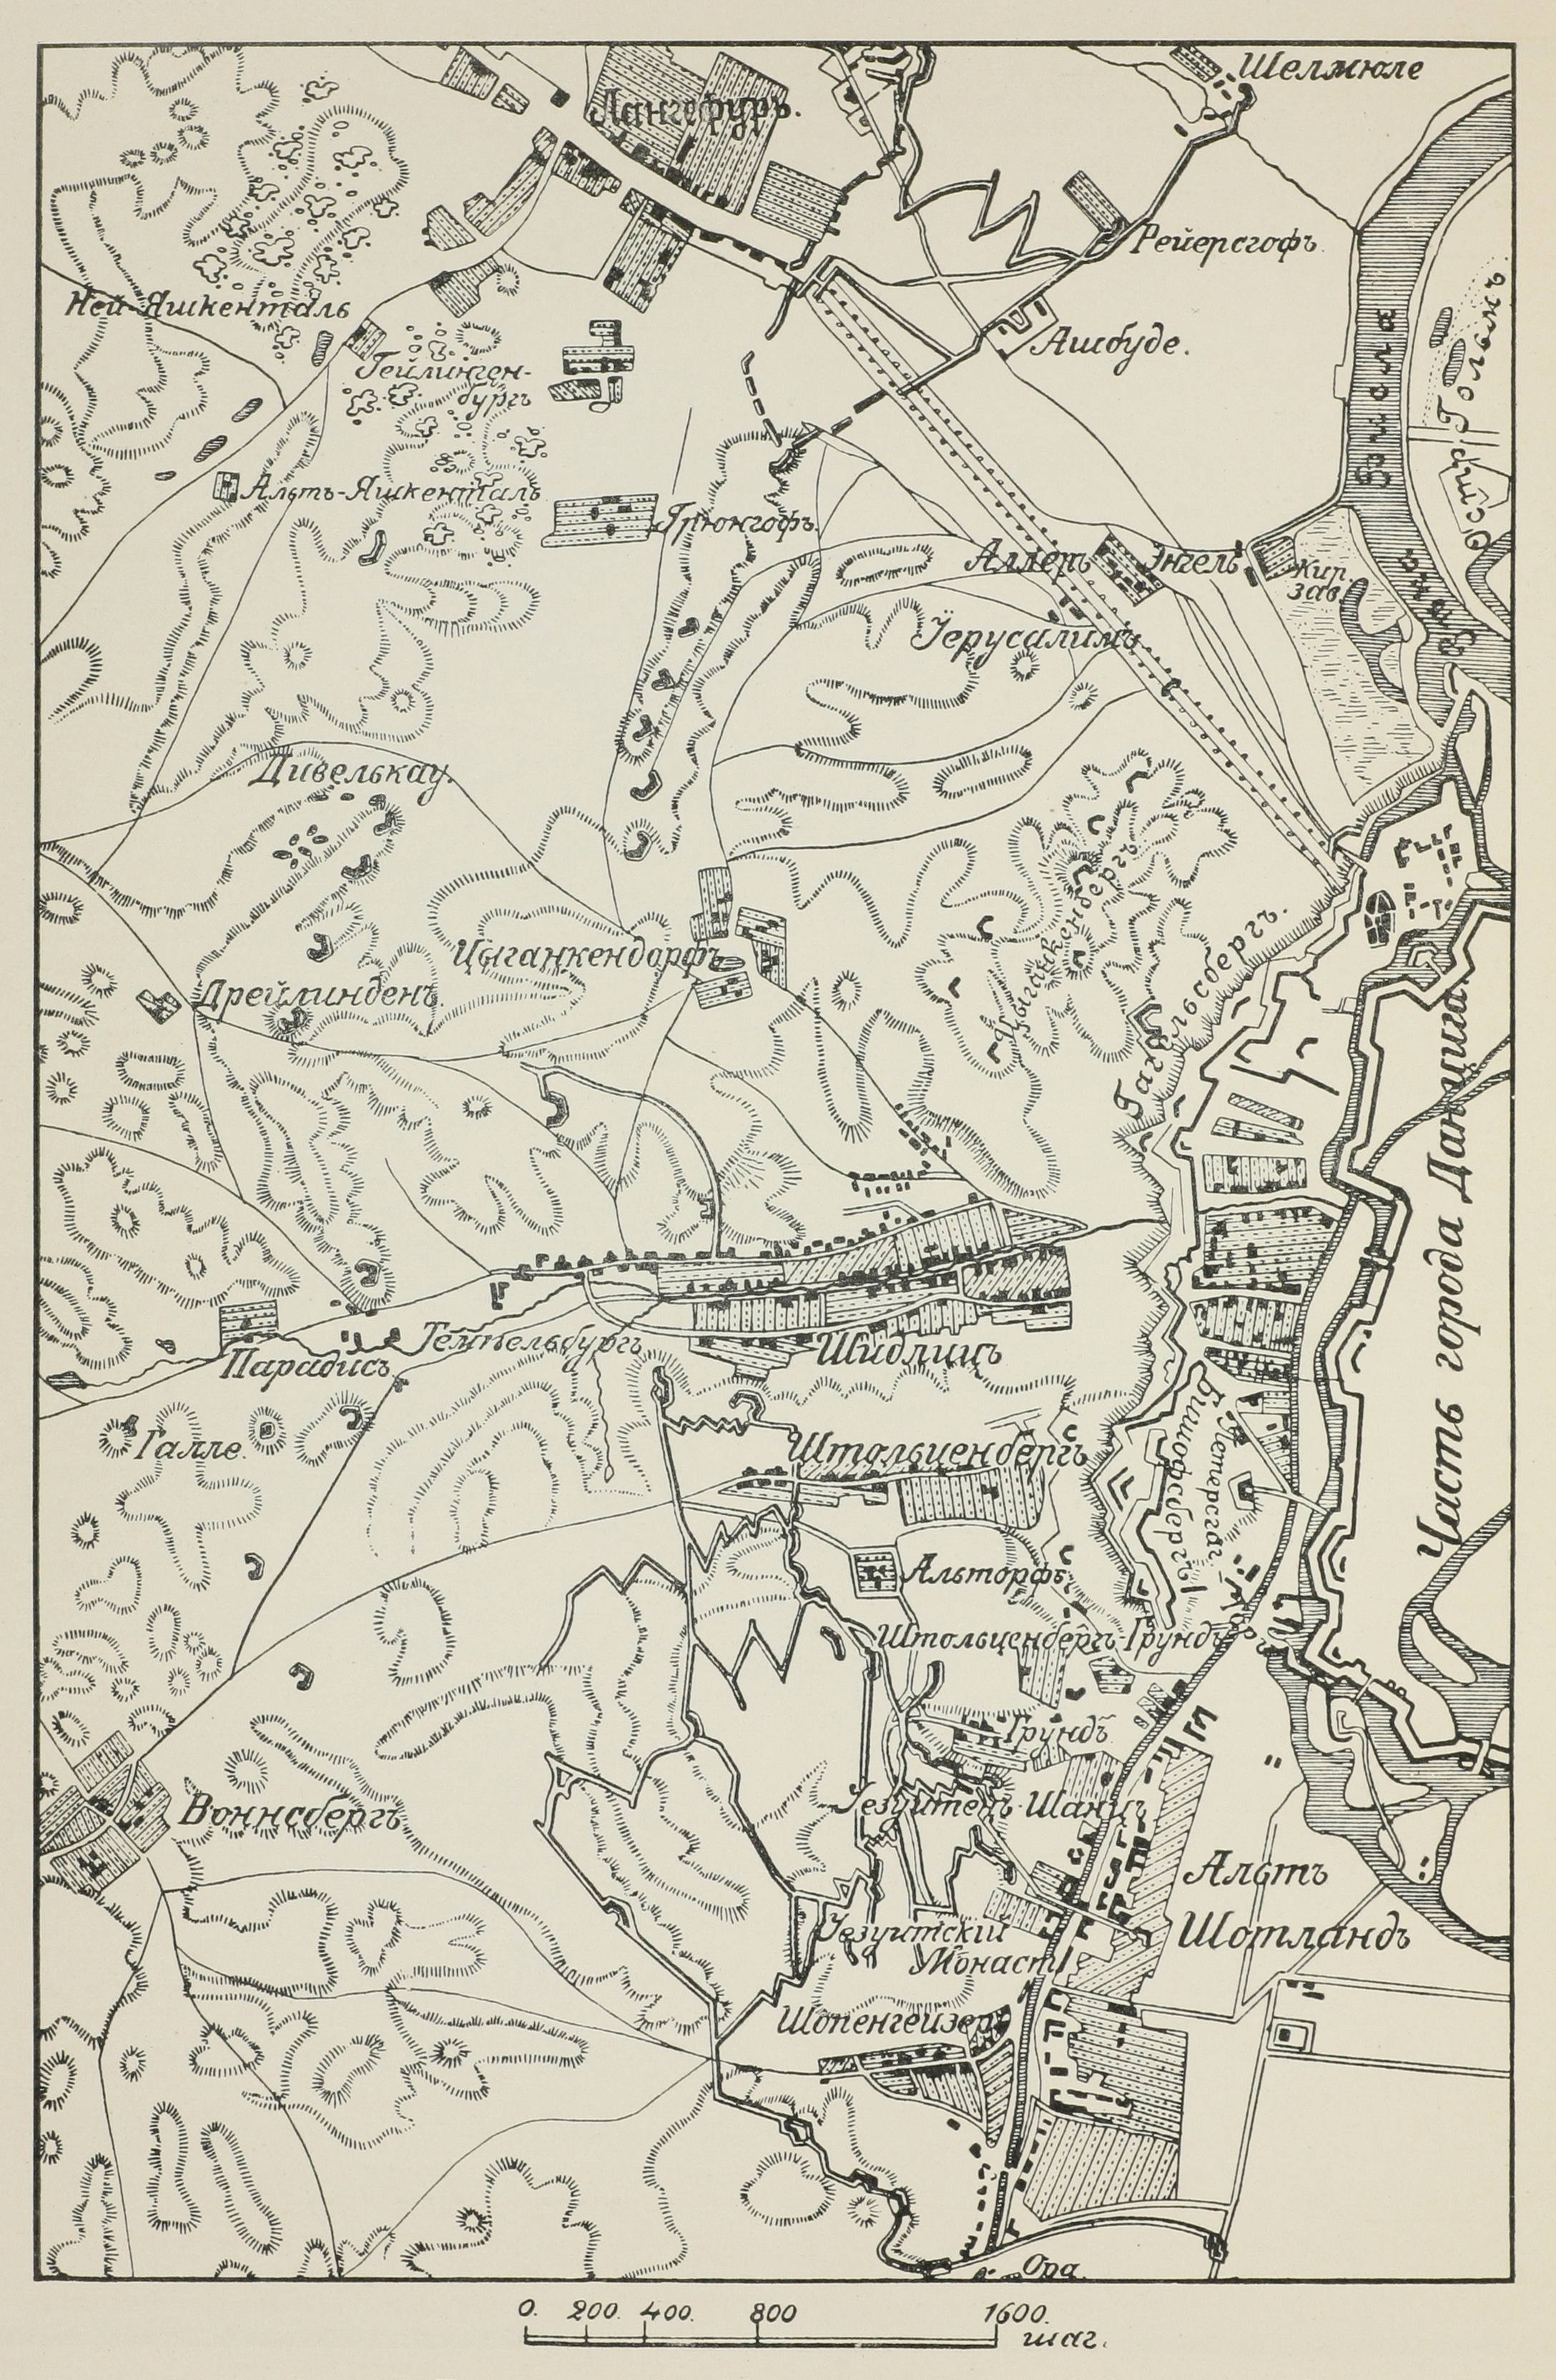 Планъ осады Данцига въ 1813 году.